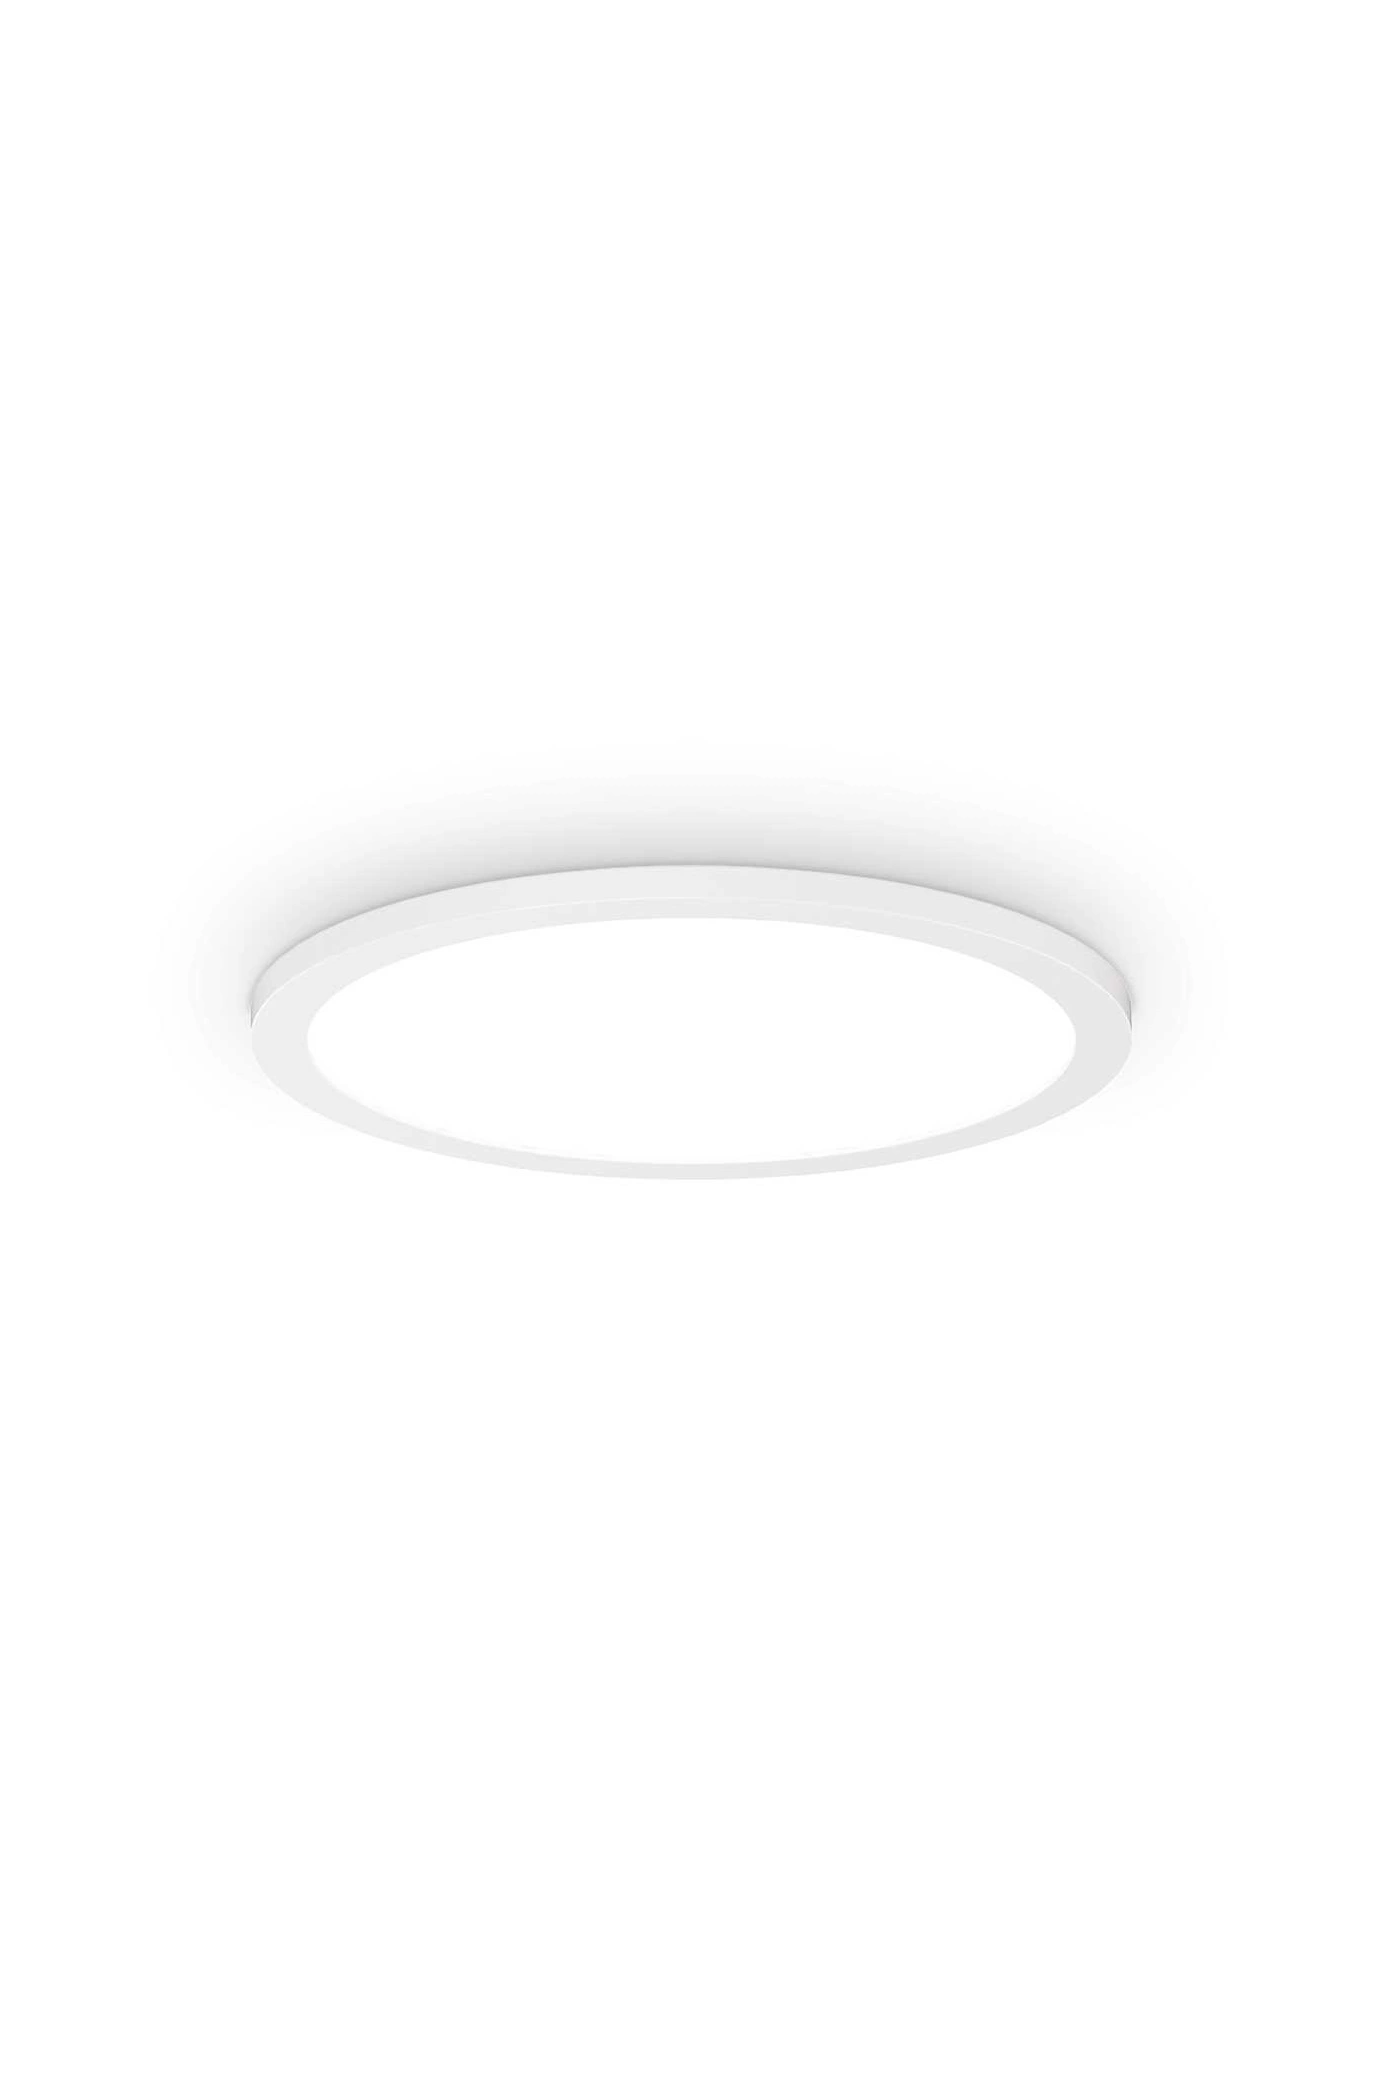   
                        
                        Светильник потолочный IDEAL LUX (Италия) 10277    
                         в стиле Модерн.  
                        Тип источника света: встроенный led-модуль, несъемный.                         Форма: Круг.                         Цвета плафонов и подвесок: Белый.                         Материал: Алюминий, Пластик.                          фото 1